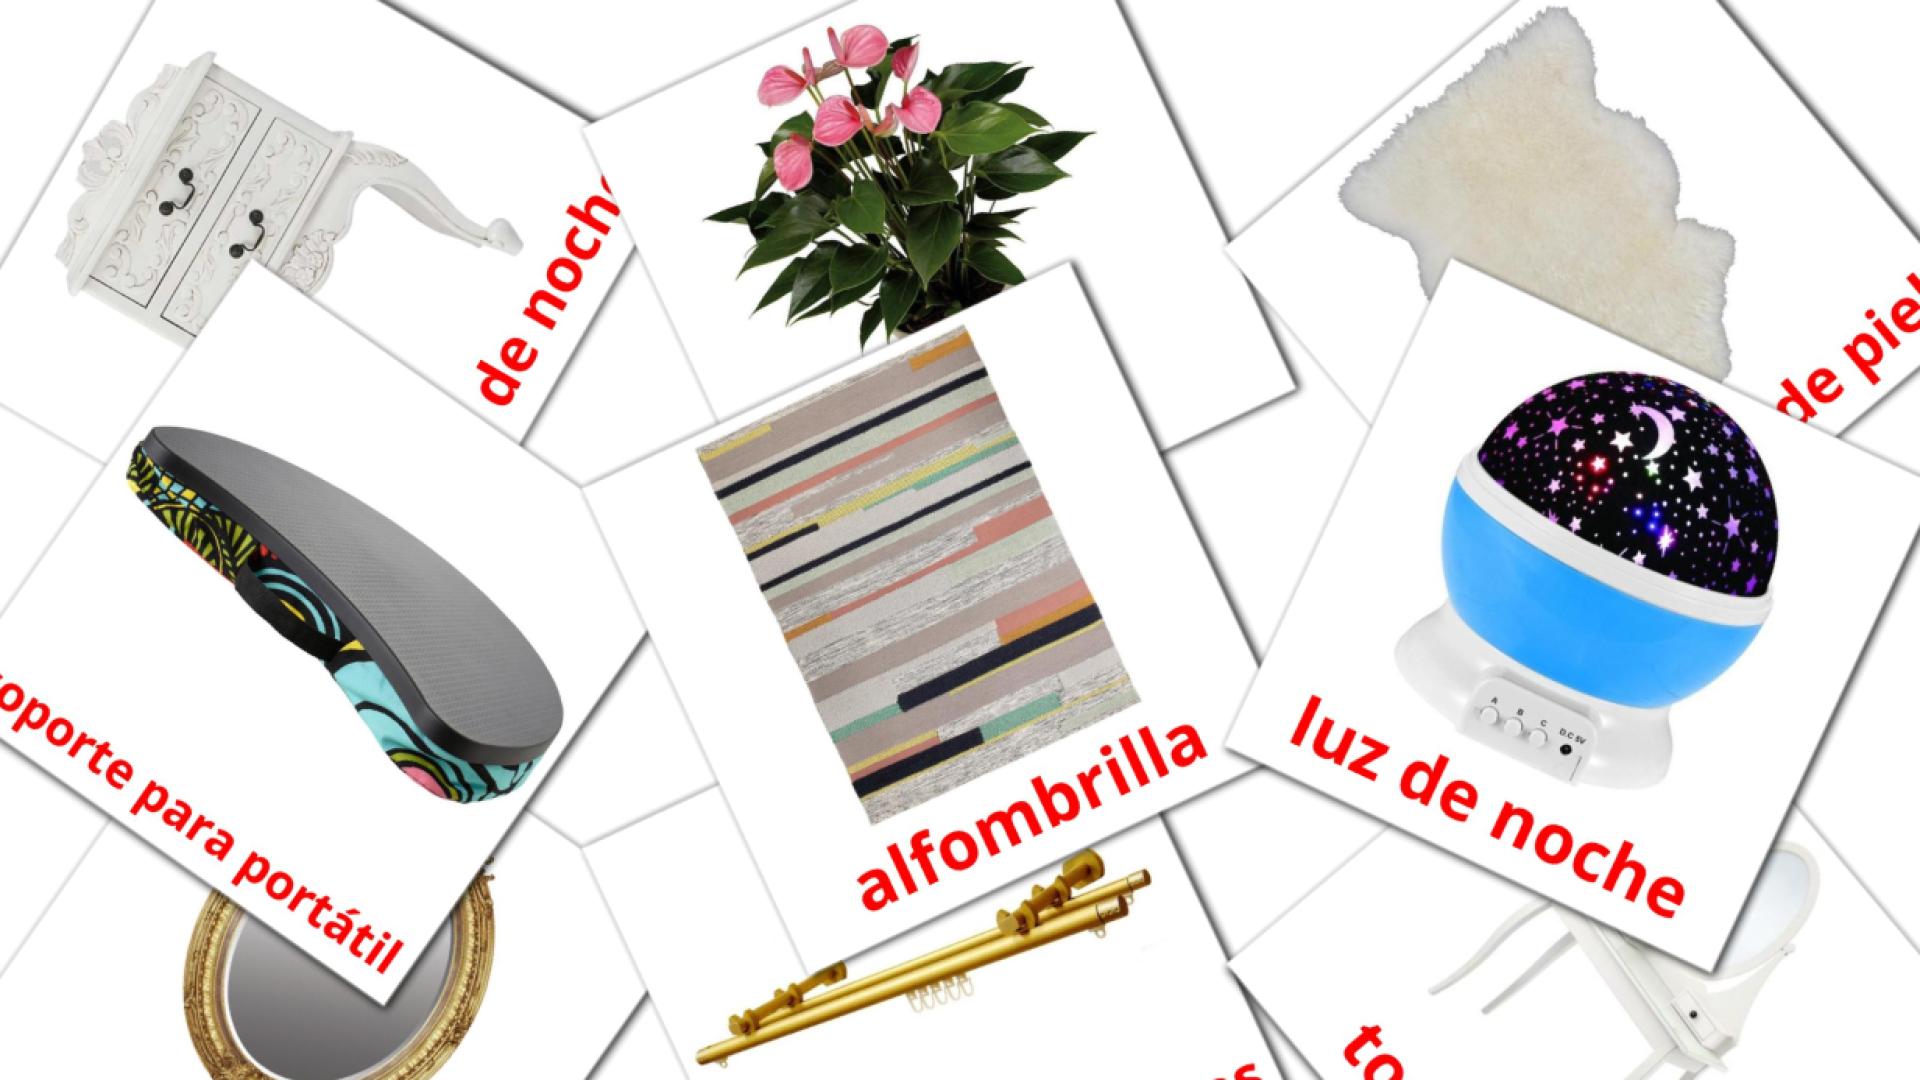 Bildkarten für Accesorios de Dormitorio